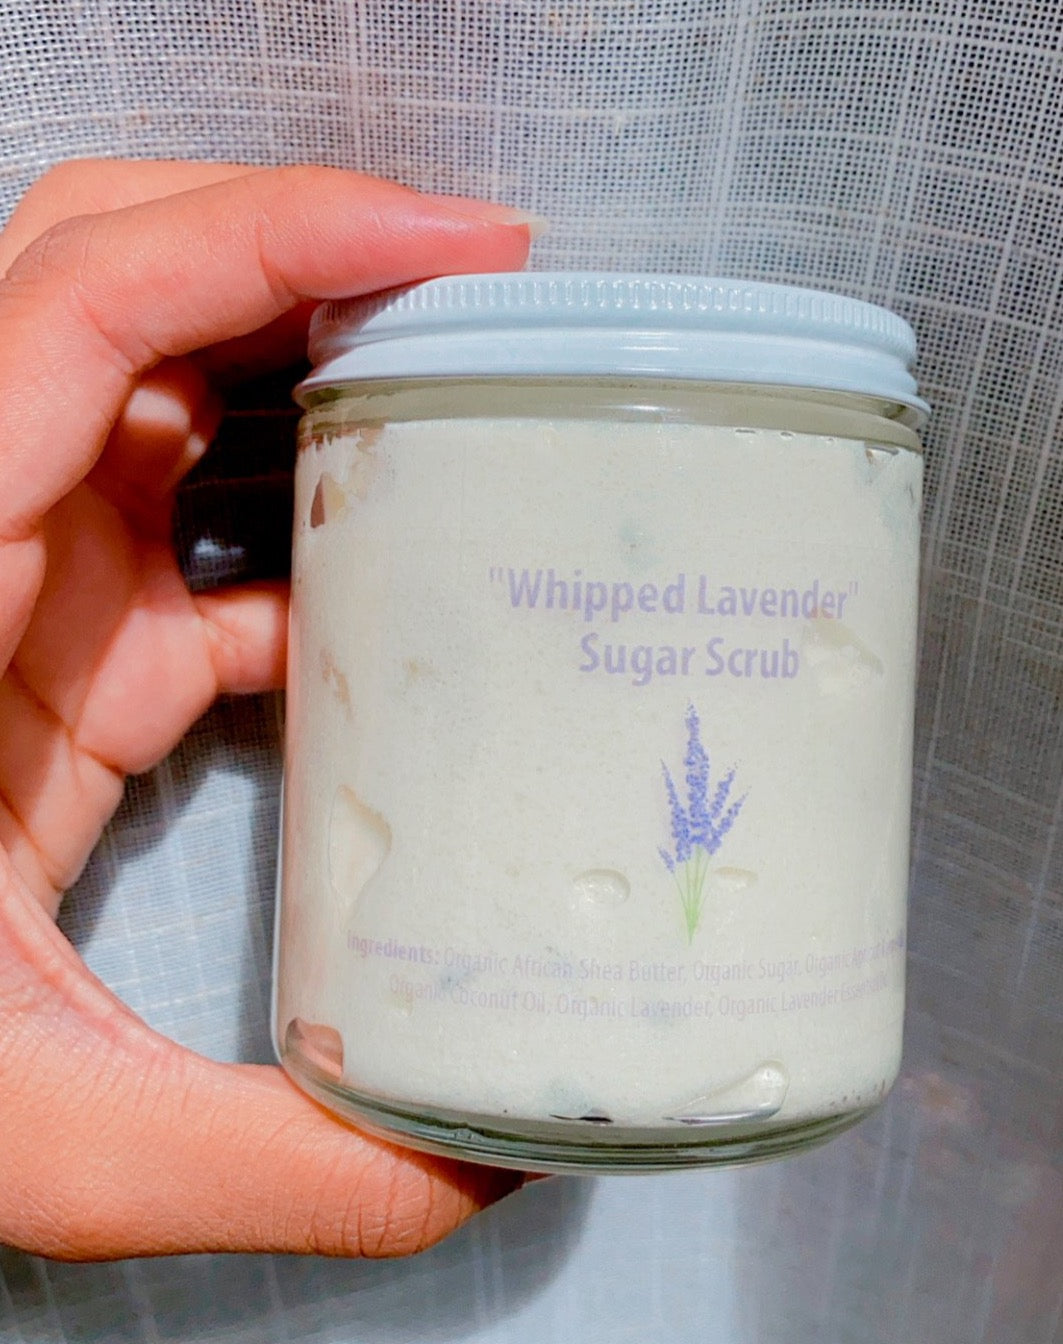 "Whipped Lavender" Sugar Scrub